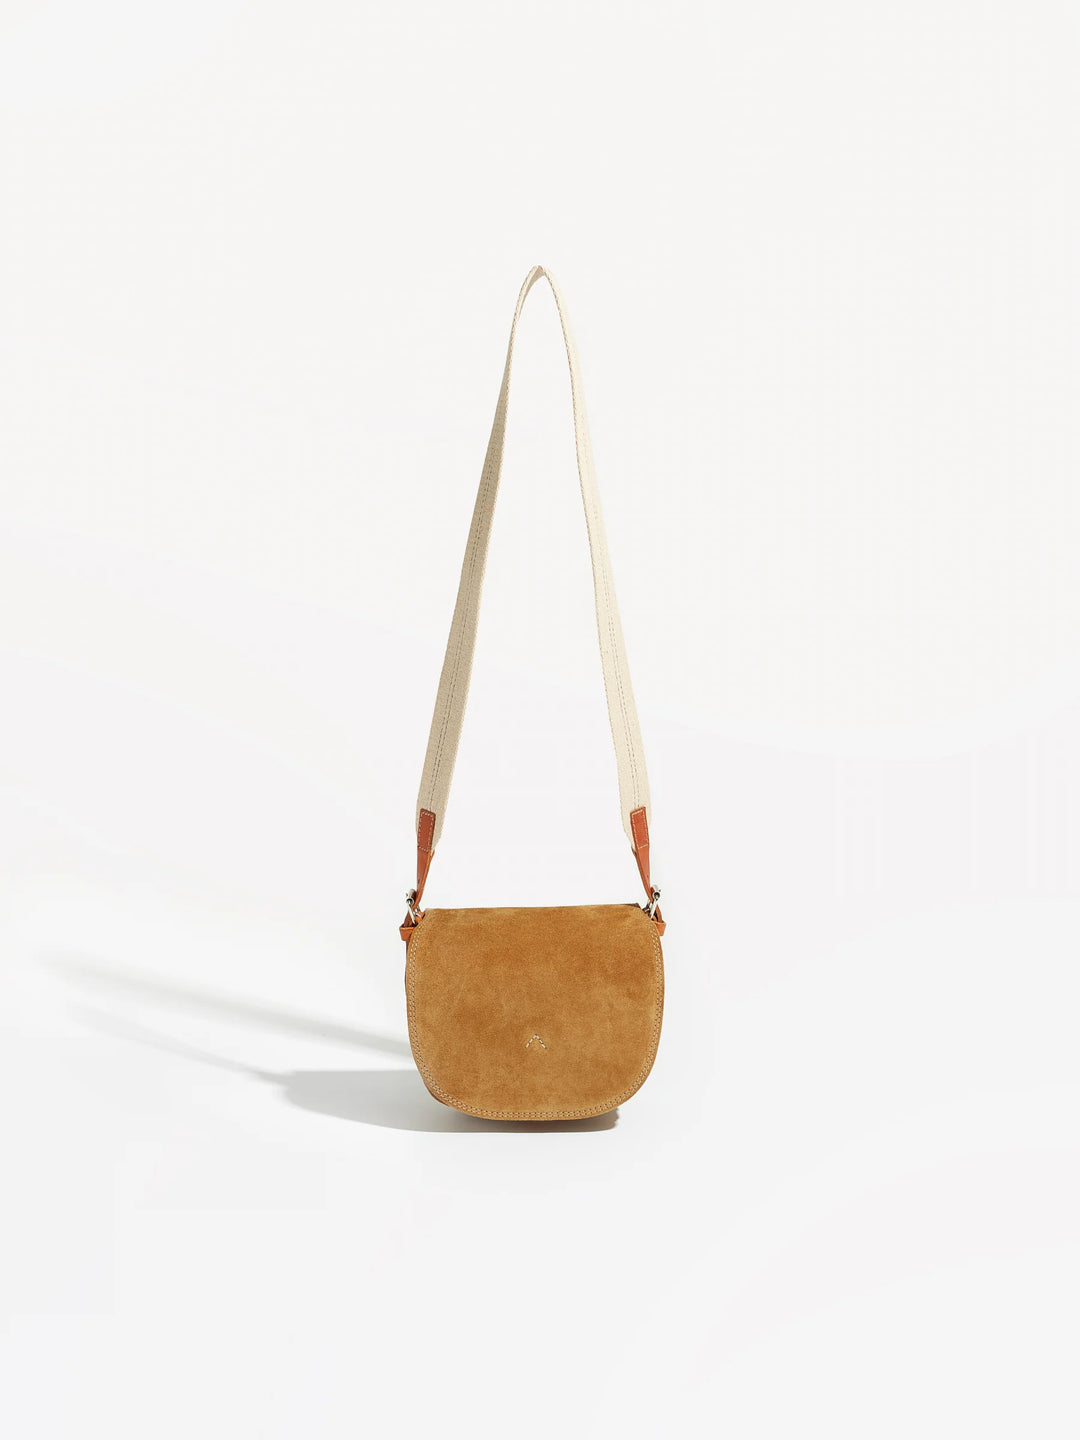 Bellerose – Stella Bag in Camel